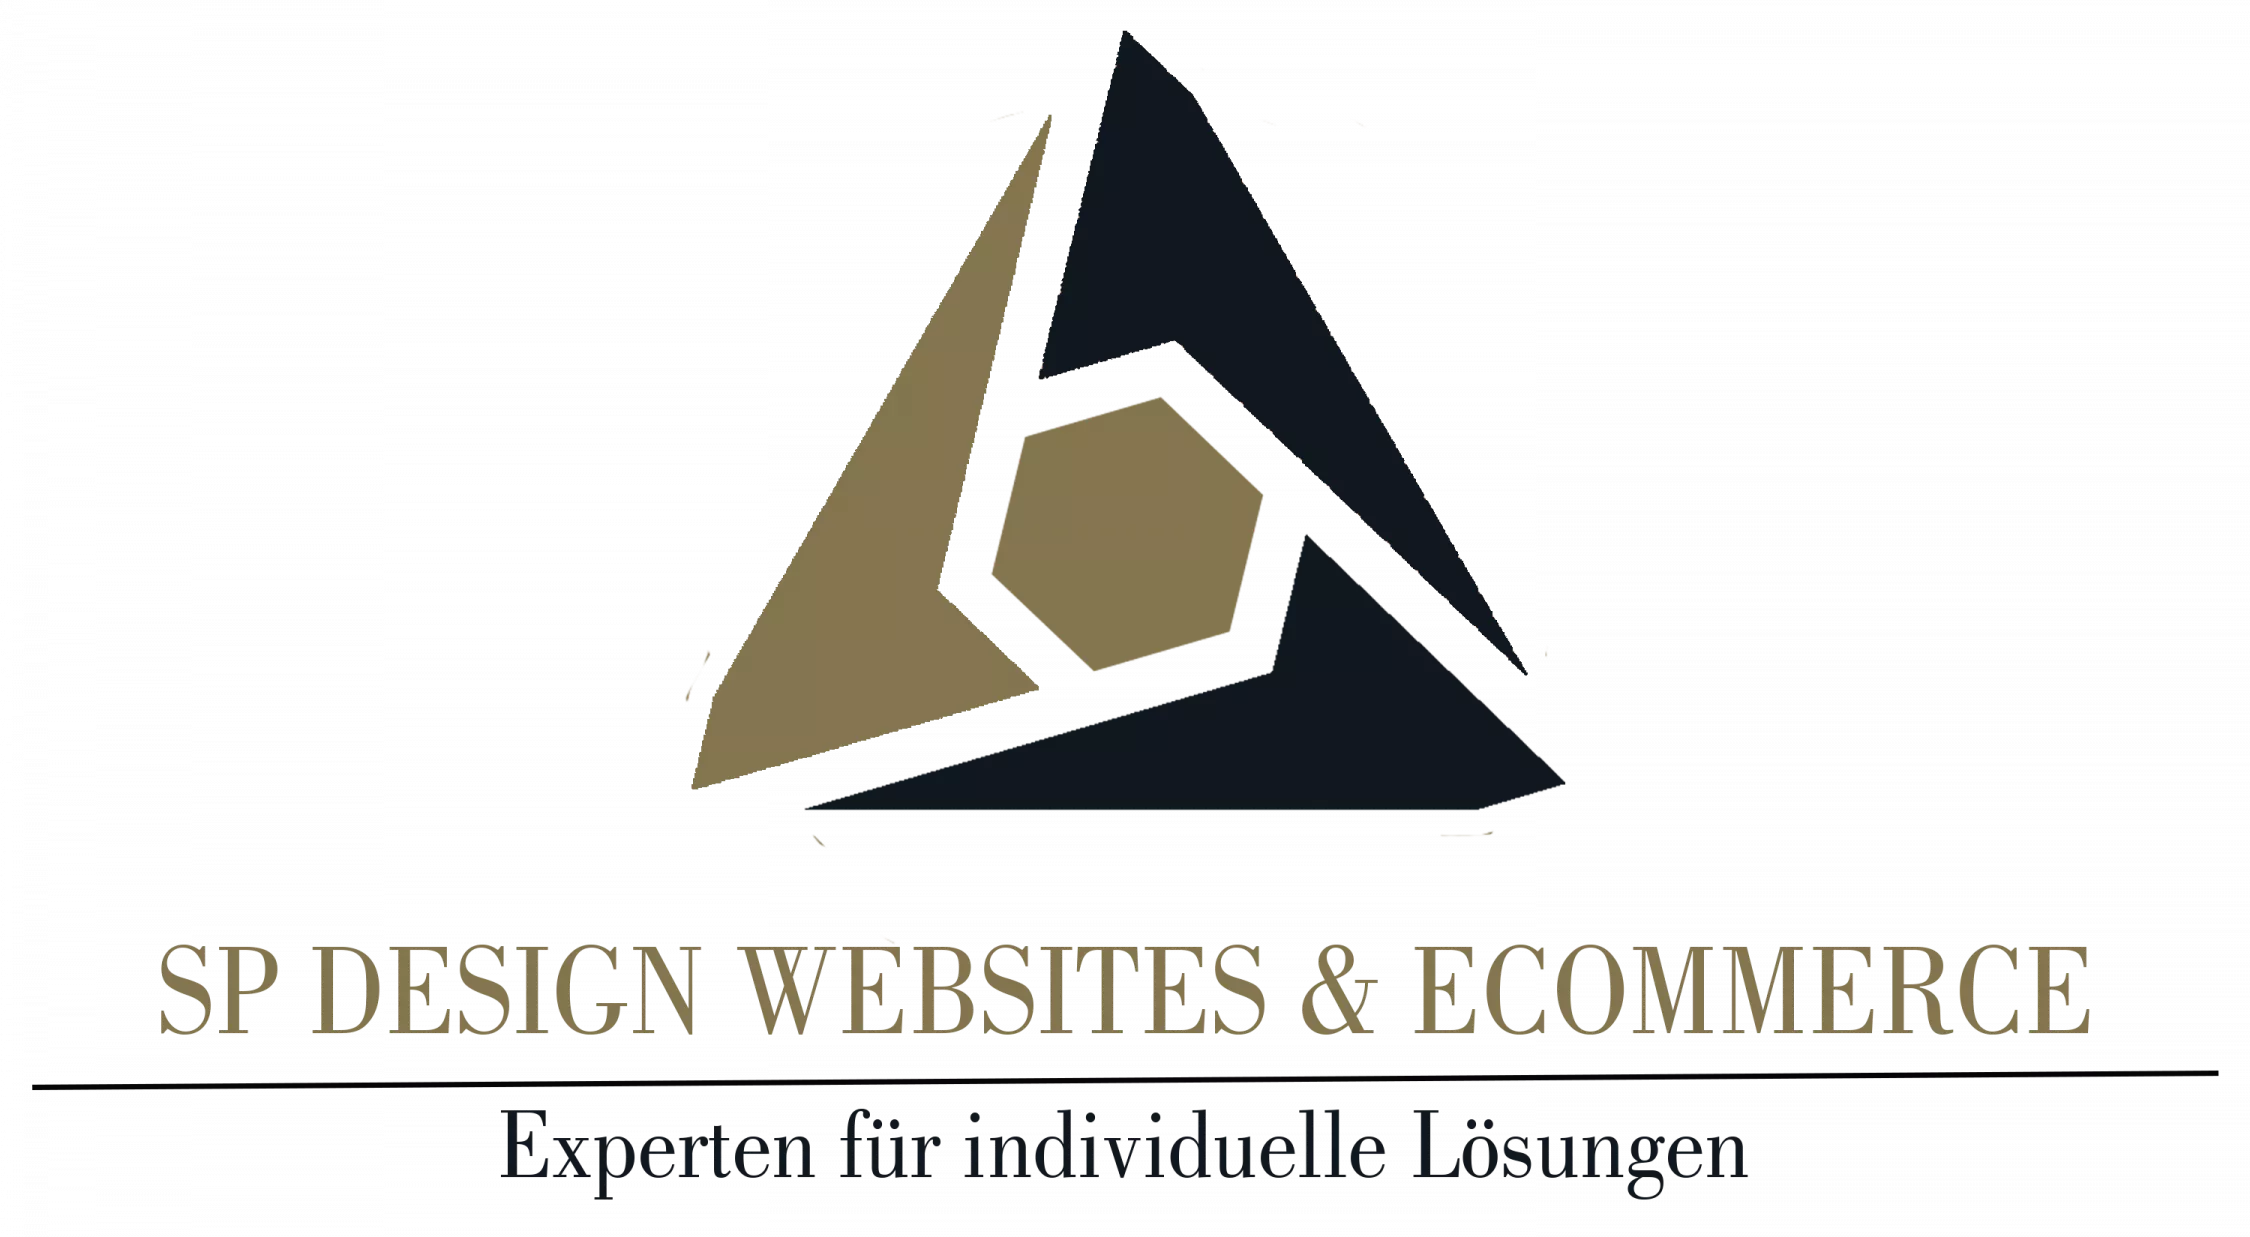 SP Design Websites & eCommerce